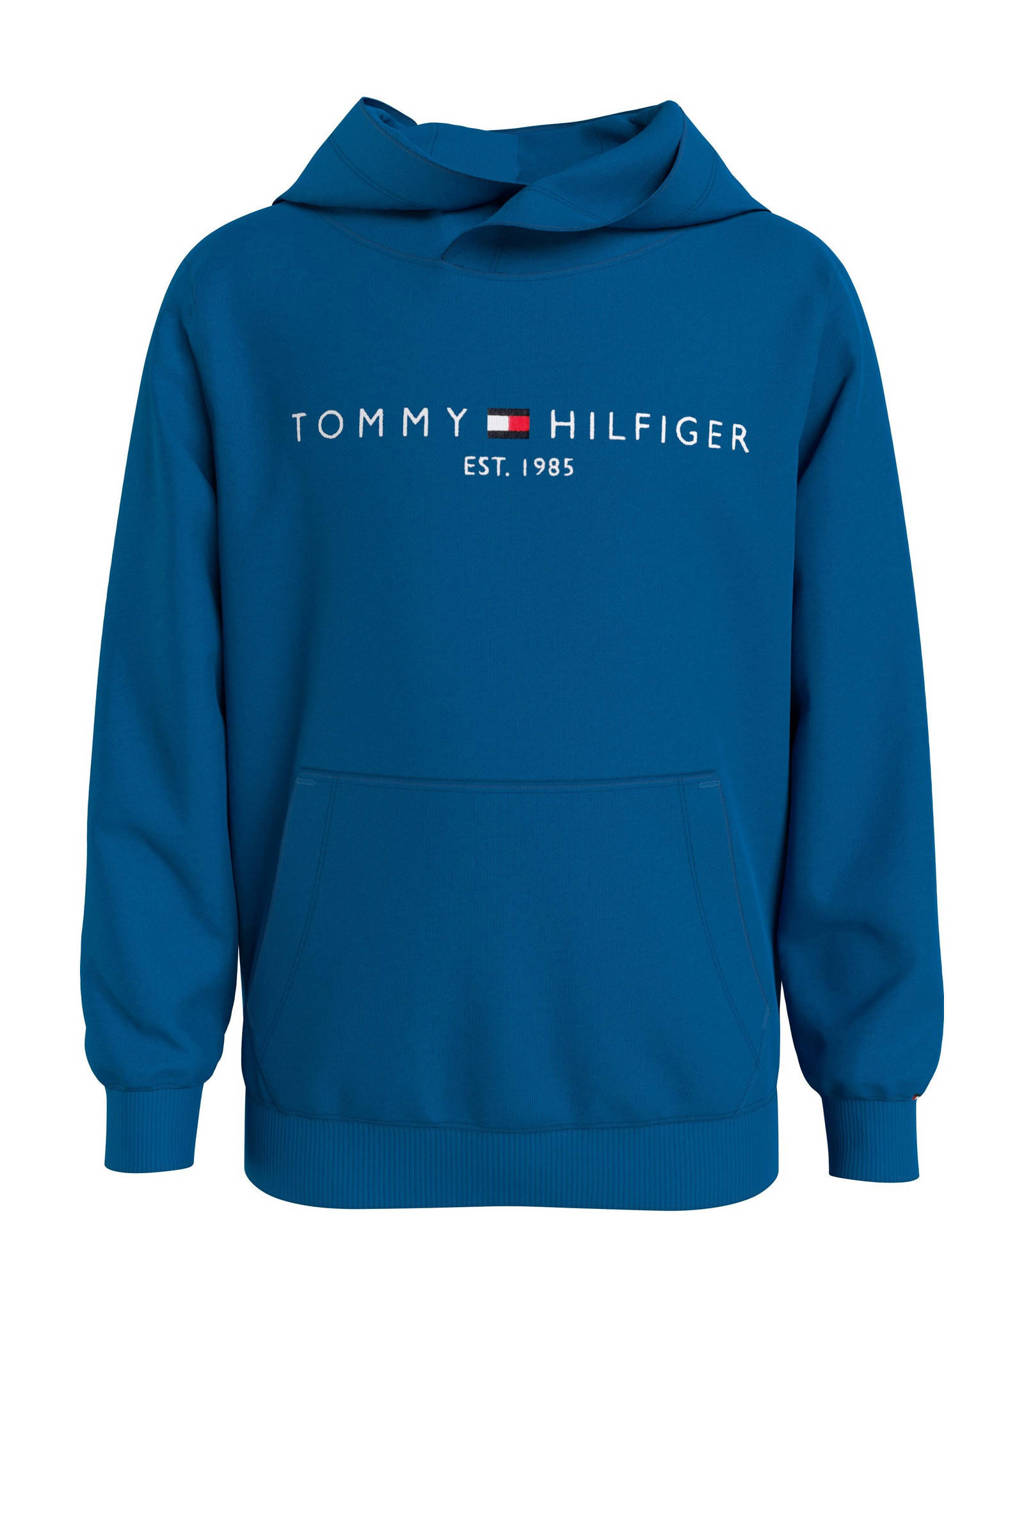 Blauwe jongens en meisjes Tommy Hilfiger hoodie van sweat materiaal met logo dessin, lange mouwen, capuchon en geribde boorden